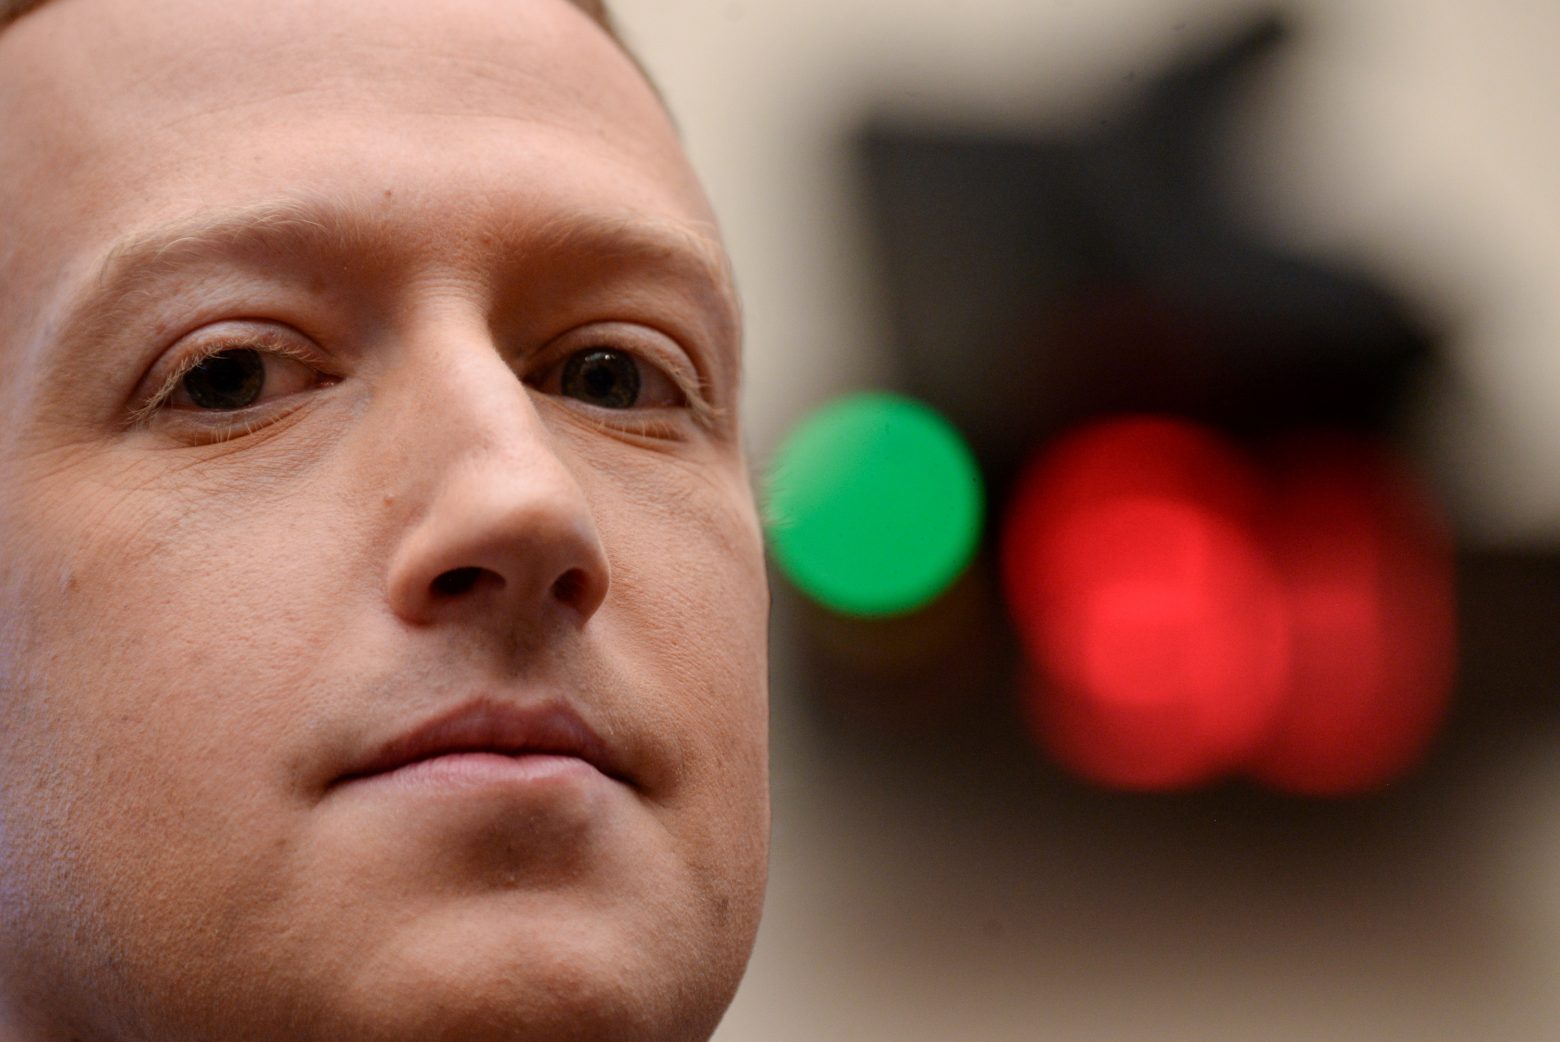 Τεράστιο πλήγμα για τον Ζάκερμπεργκ - Πόσα χρήματα έχασε μέσα σε λίγες ώρες από την «κατάρρευση» του Facebook